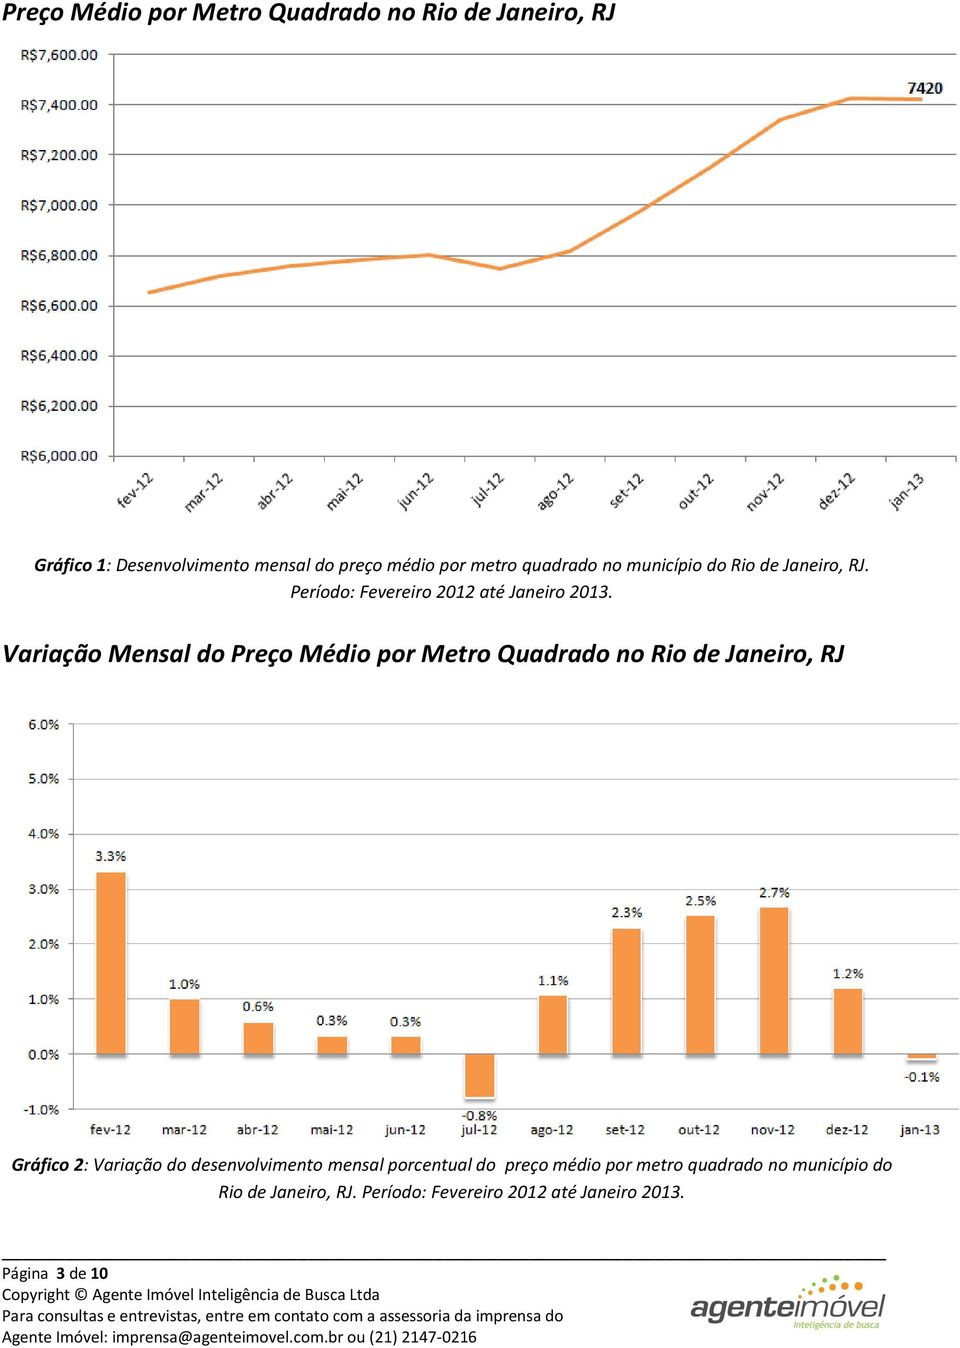 Variação Mensal do Preço Médio por Metro Quadrado no Rio de Janeiro, RJ Gráfico 2: Variação do desenvolvimento